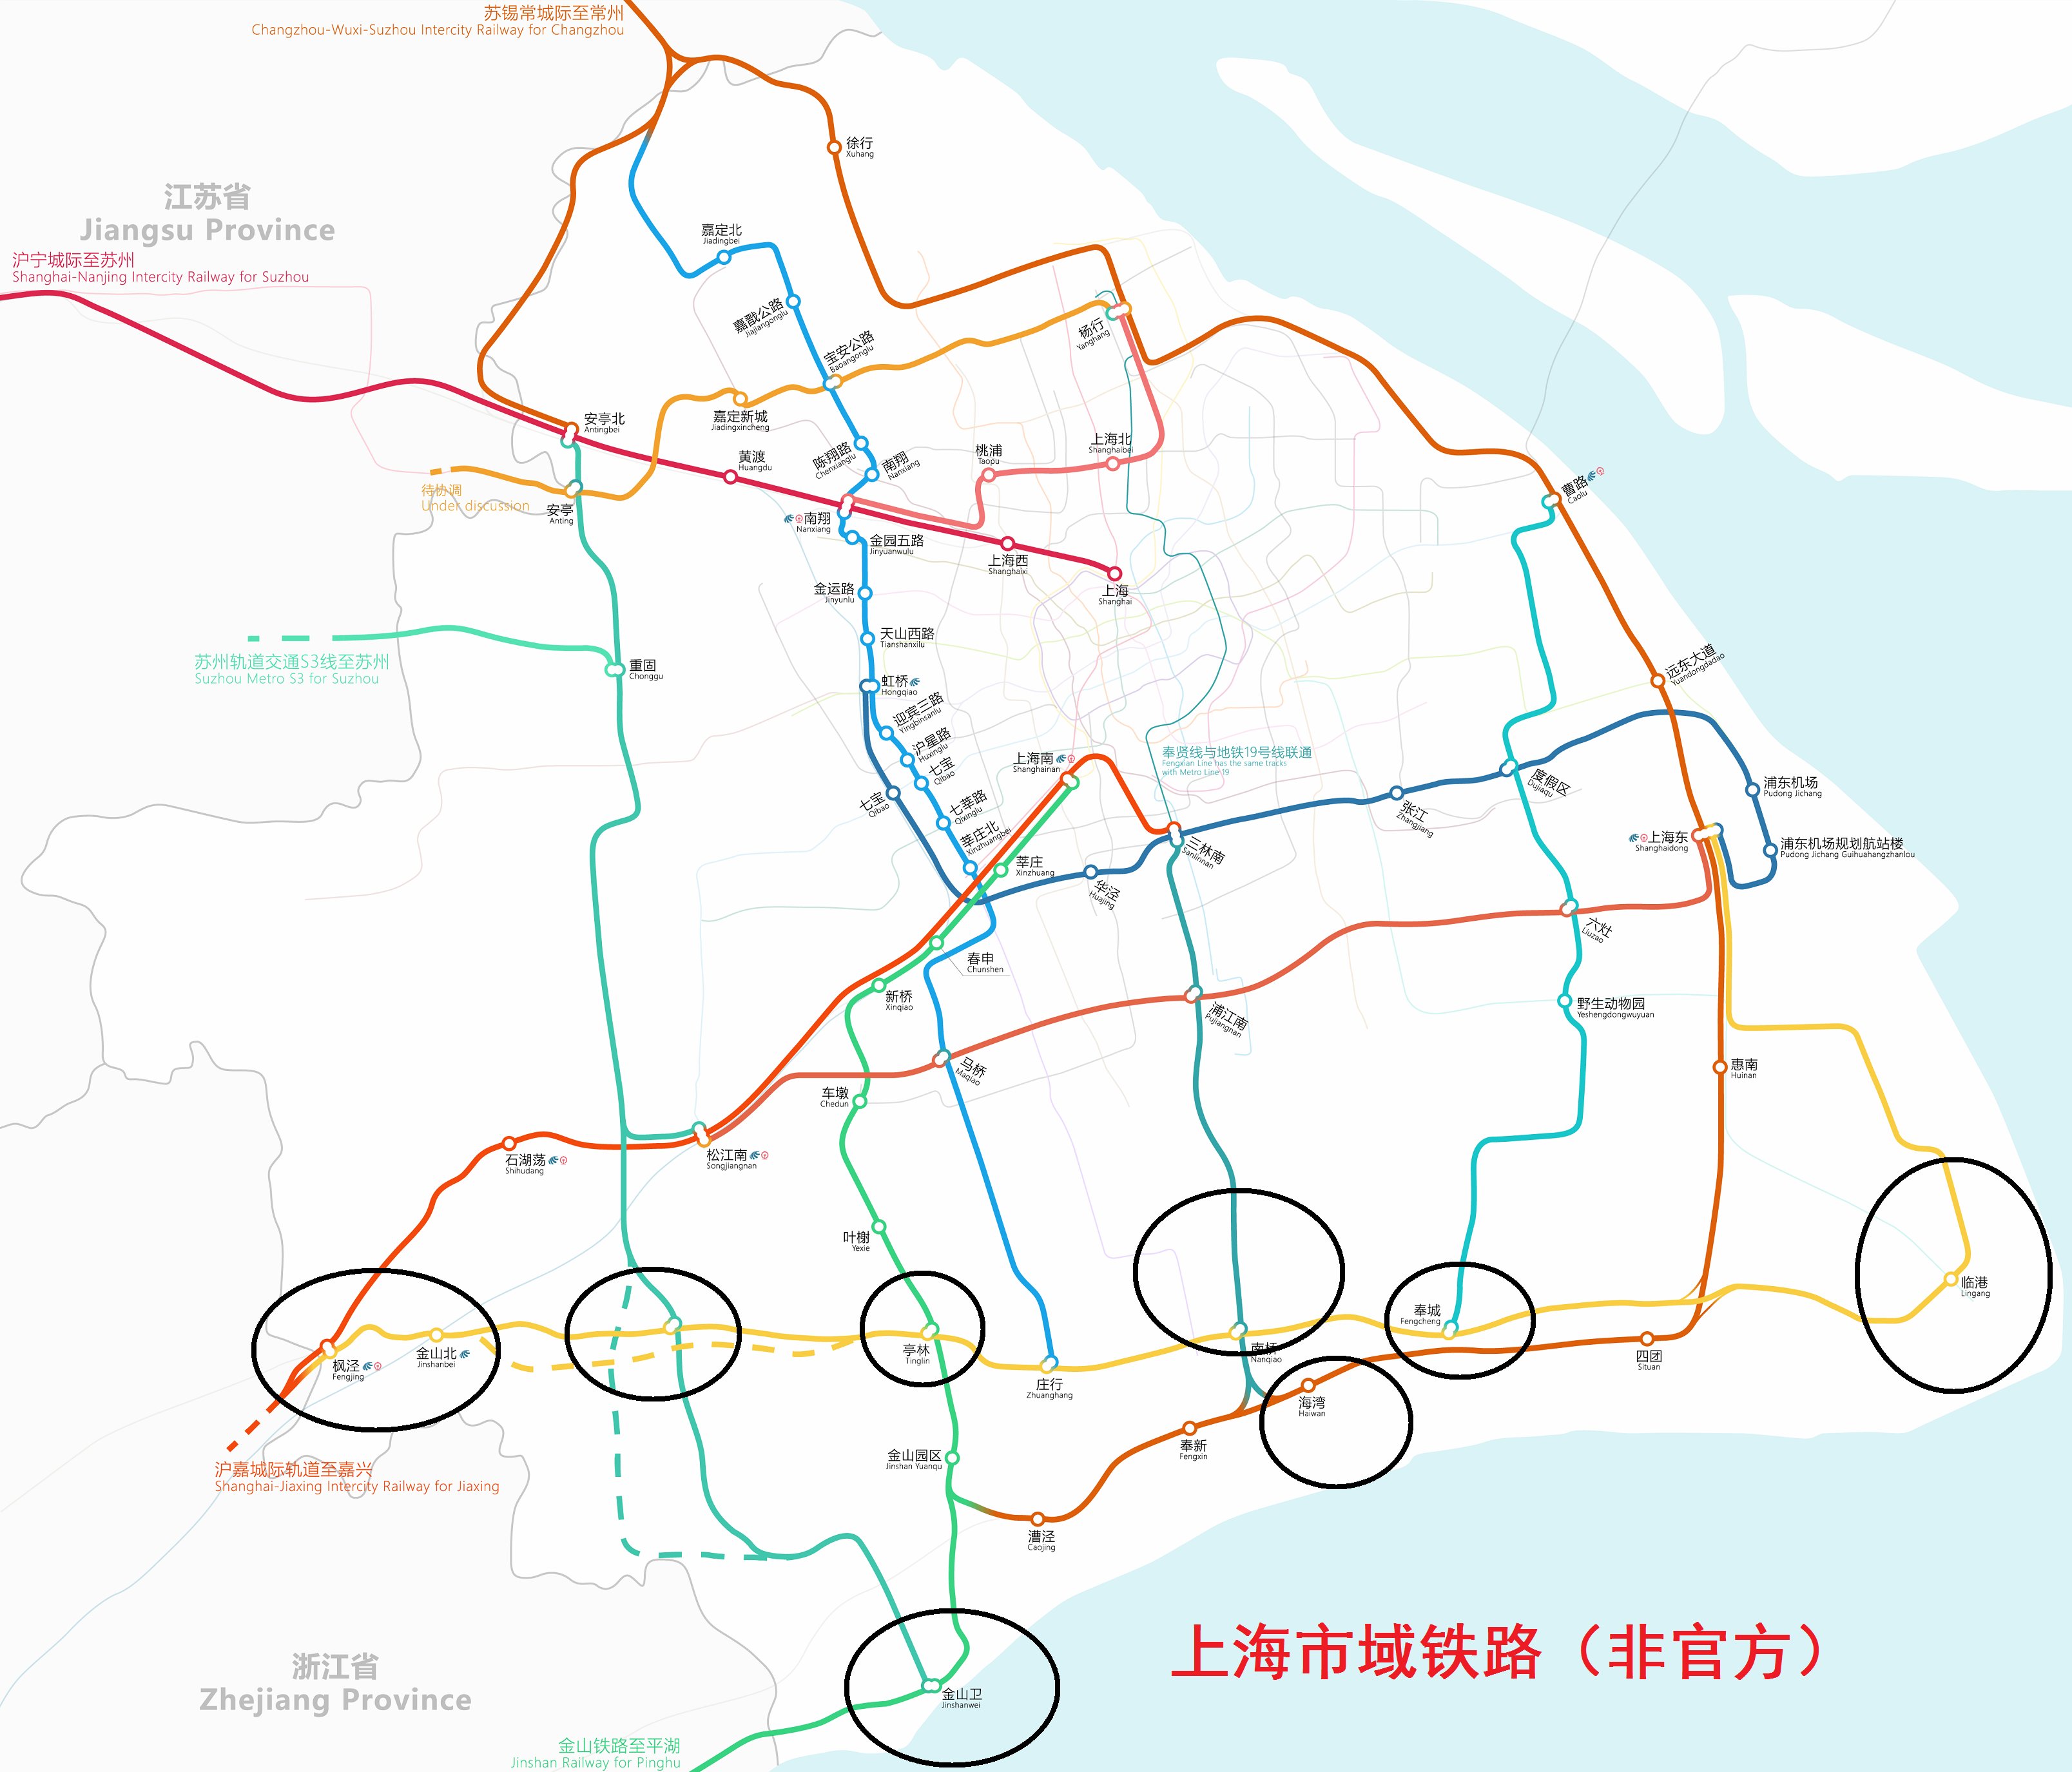 上海铁路局地图图片